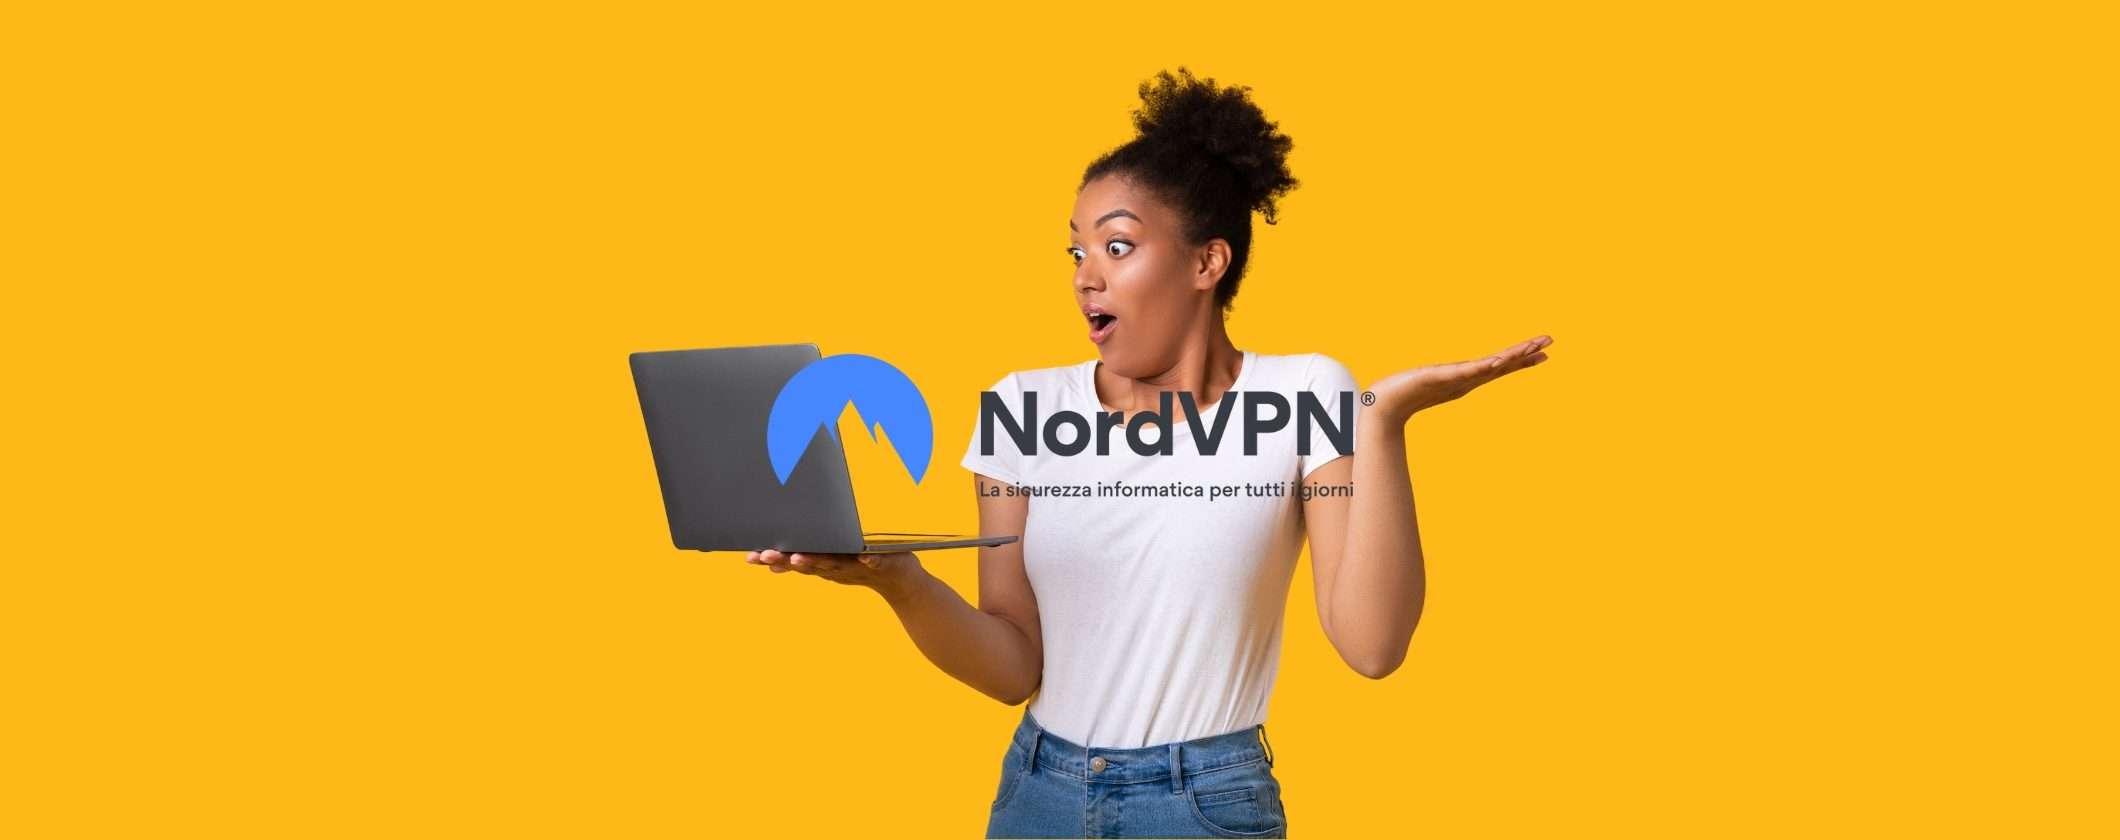 NordVPN: sicurezza e prestazioni all in one